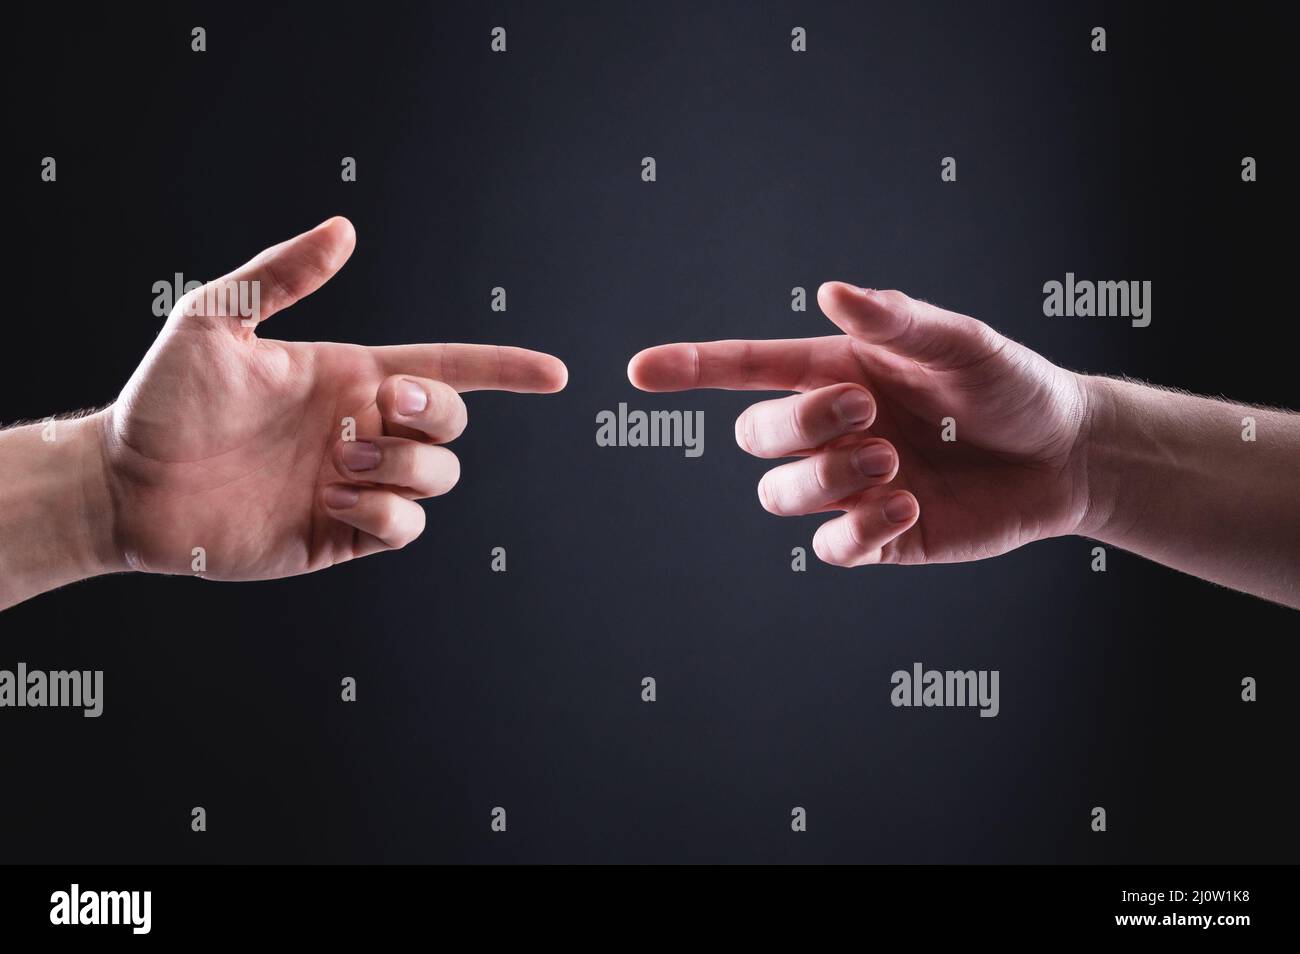 Zwei Männerhände zeigen mit Zeigefingern aufeinander. Das Konzept des gegenseitigen Verständnisses zwischen Männern, ausgedrückt in Handgestur Stockfoto